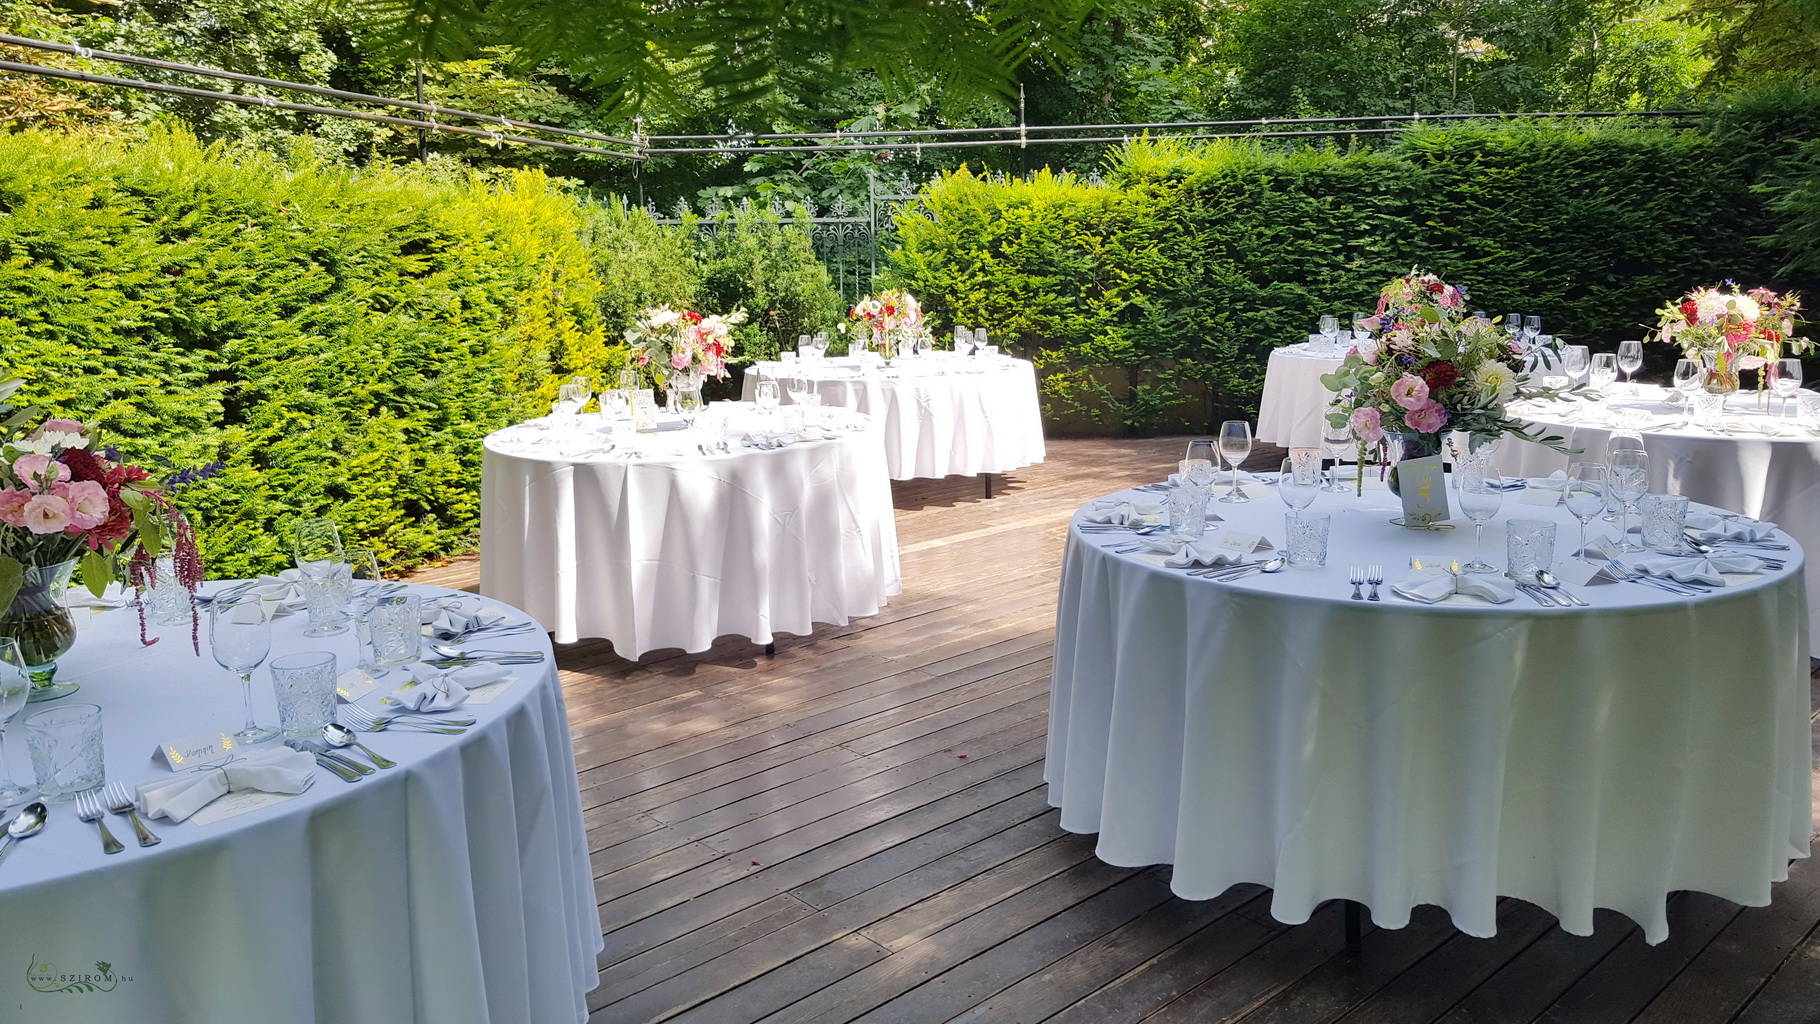 Esküvői asztaldísz mezei virágokkal (liziantusz, dália, mezei virágok)